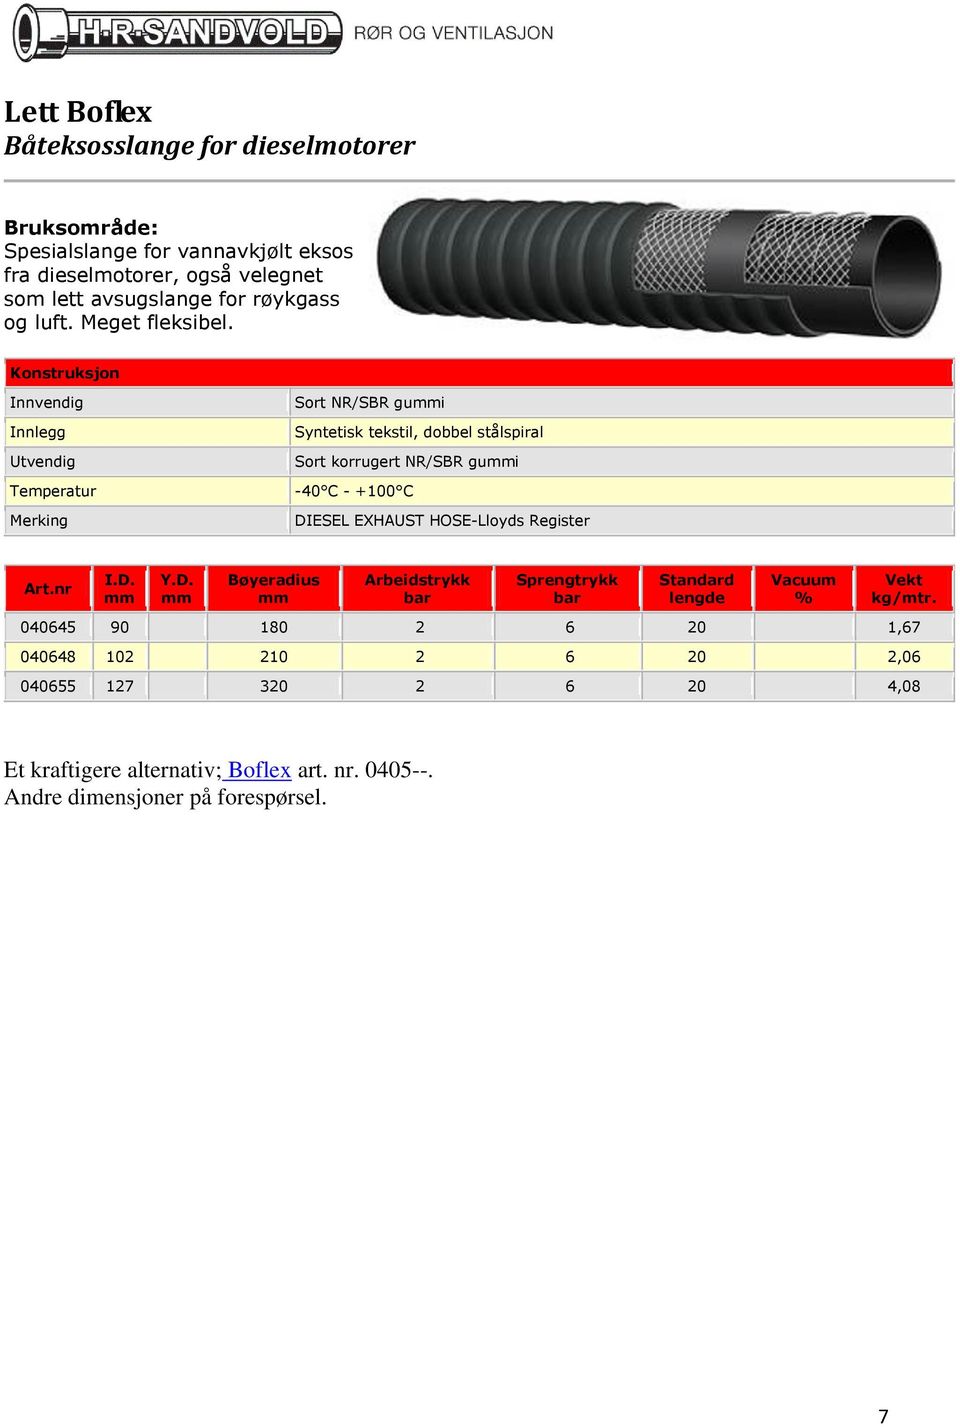 Innlegg Sort NR/SBR gui Syntetisk tekstil, dobbel stålspiral Sort korrugert NR/SBR gui -40 C - +100 C DIESEL EXHAUST